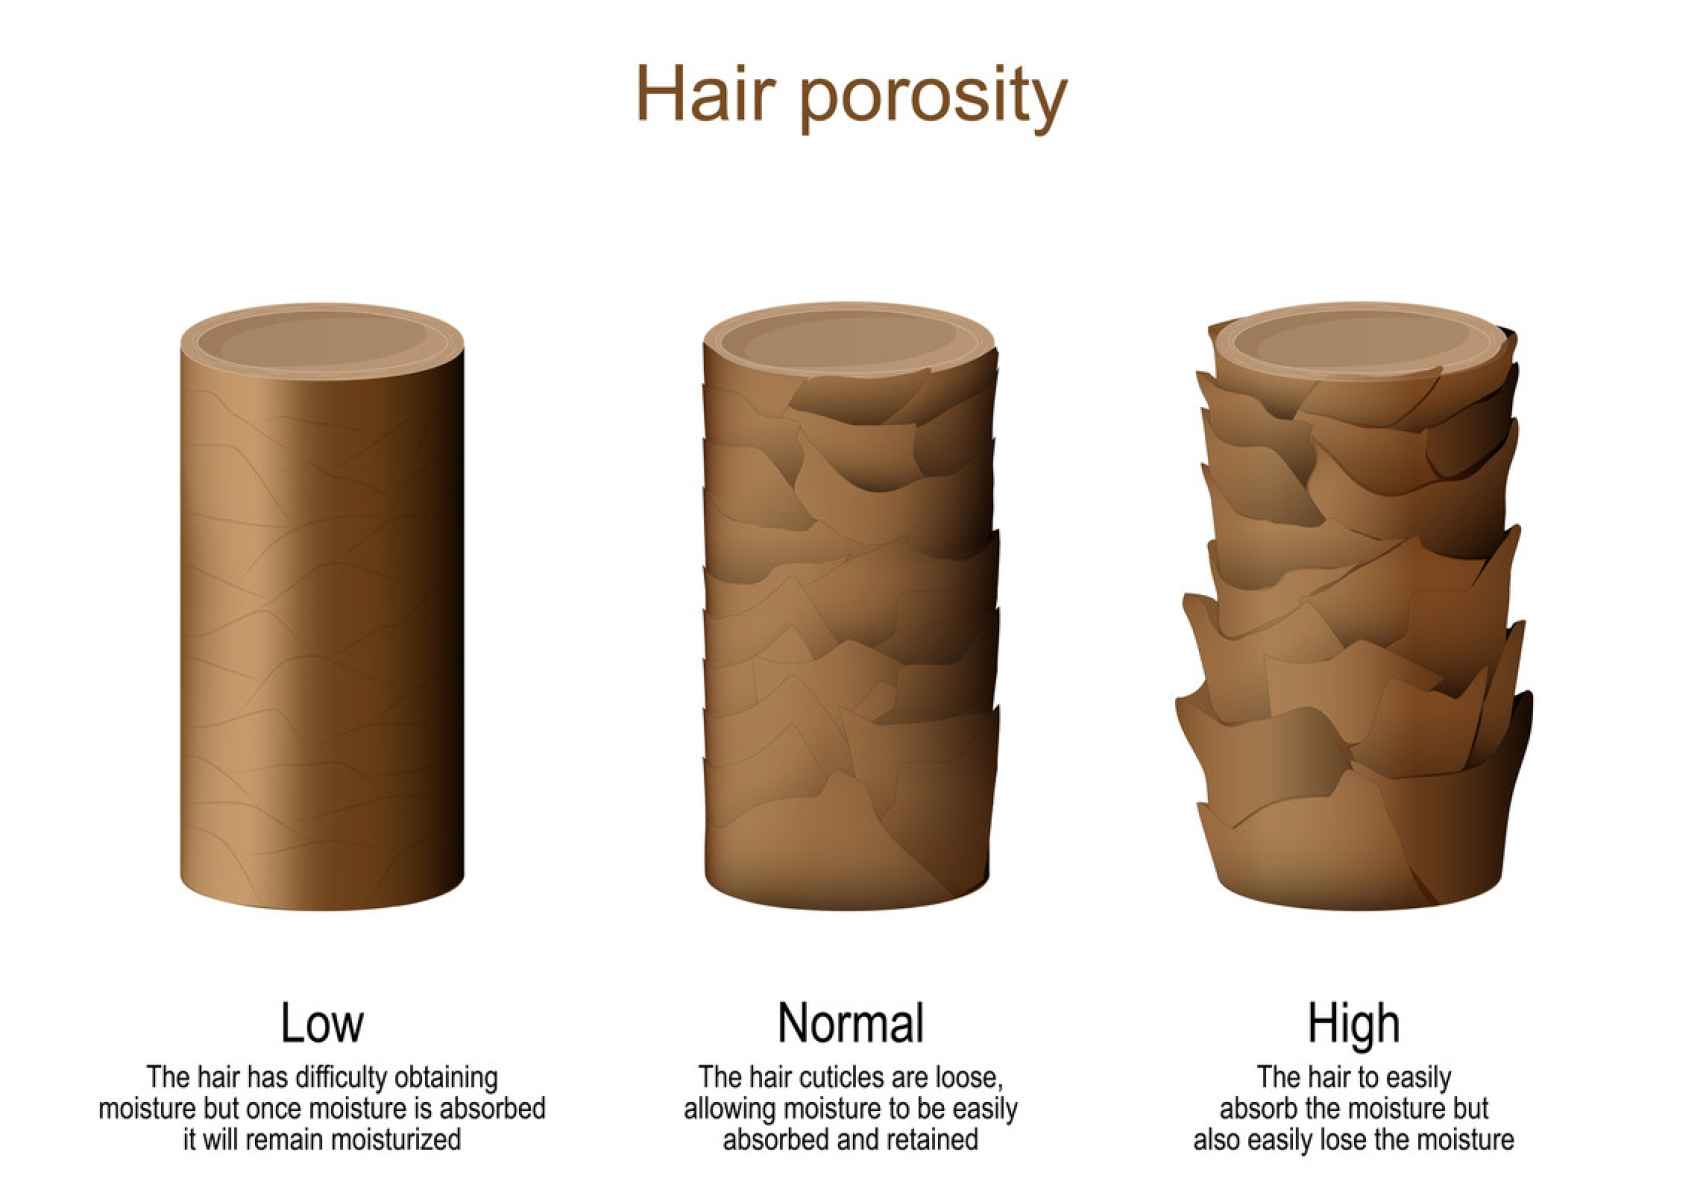 Dibujo de cabellos con distintos niveles de porosidad.